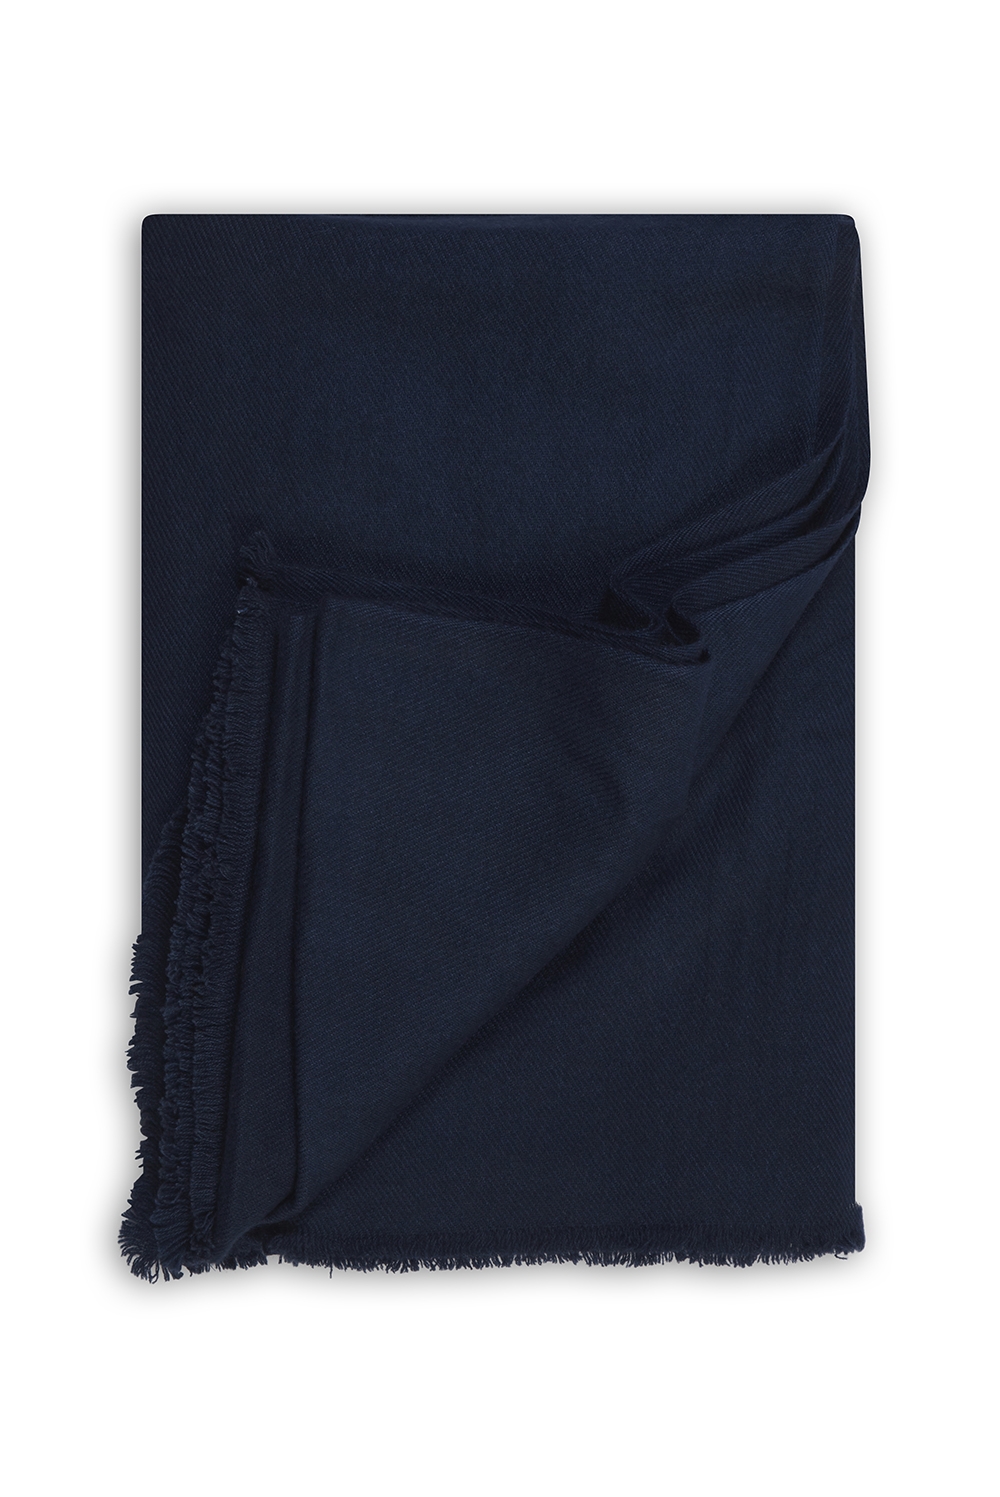 Cachemire accessoires couvertures plaids toodoo plain l 220 x 220 bleu marine 220x220cm